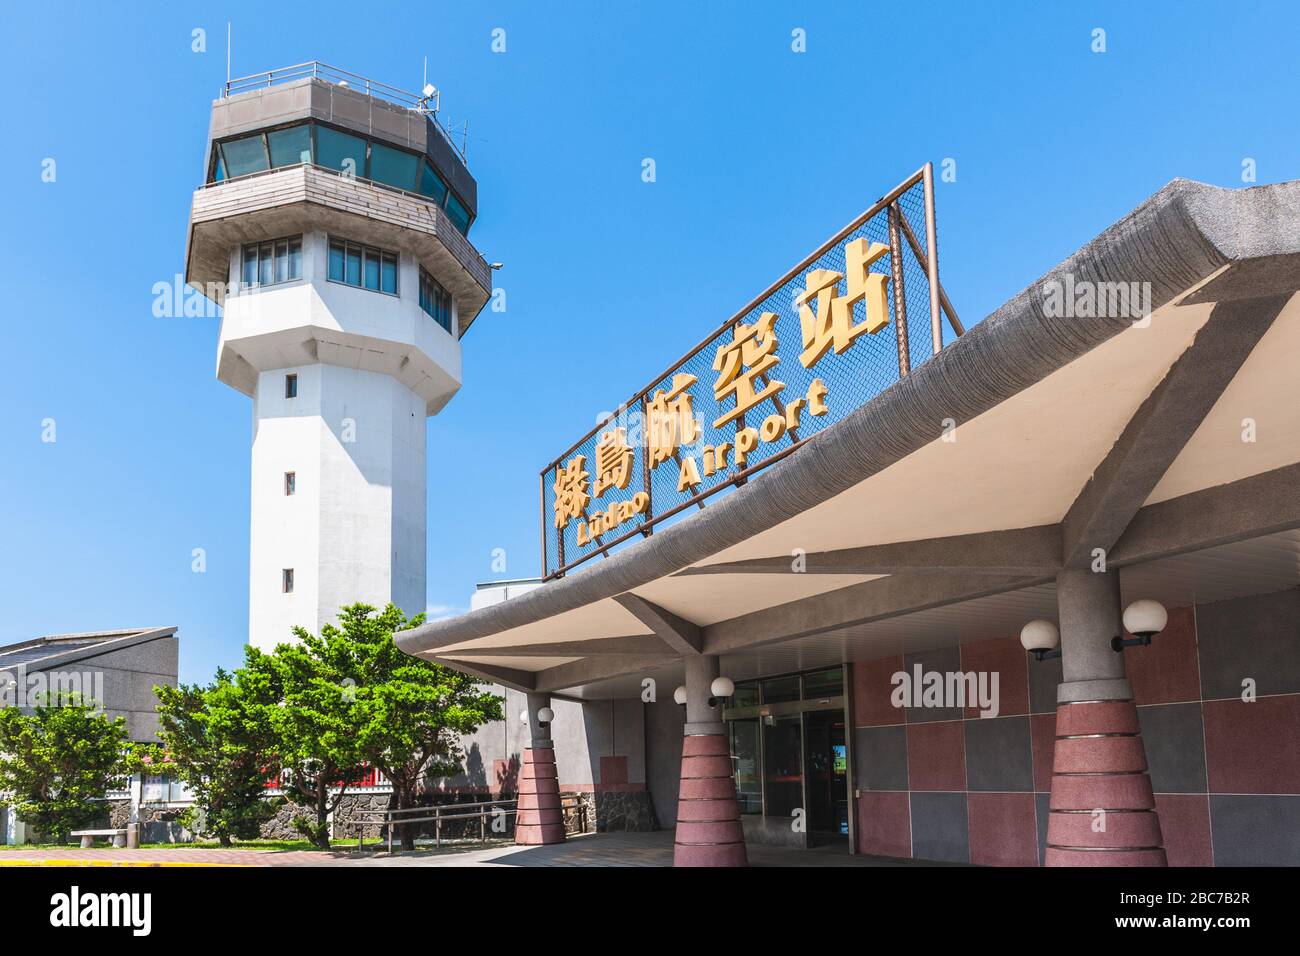 Flughafen Ludao auf der Insel Ludao, taitung, taiwan. Übersetzung des chinesischen Textes: "Flughafen Ludao" Stockfoto